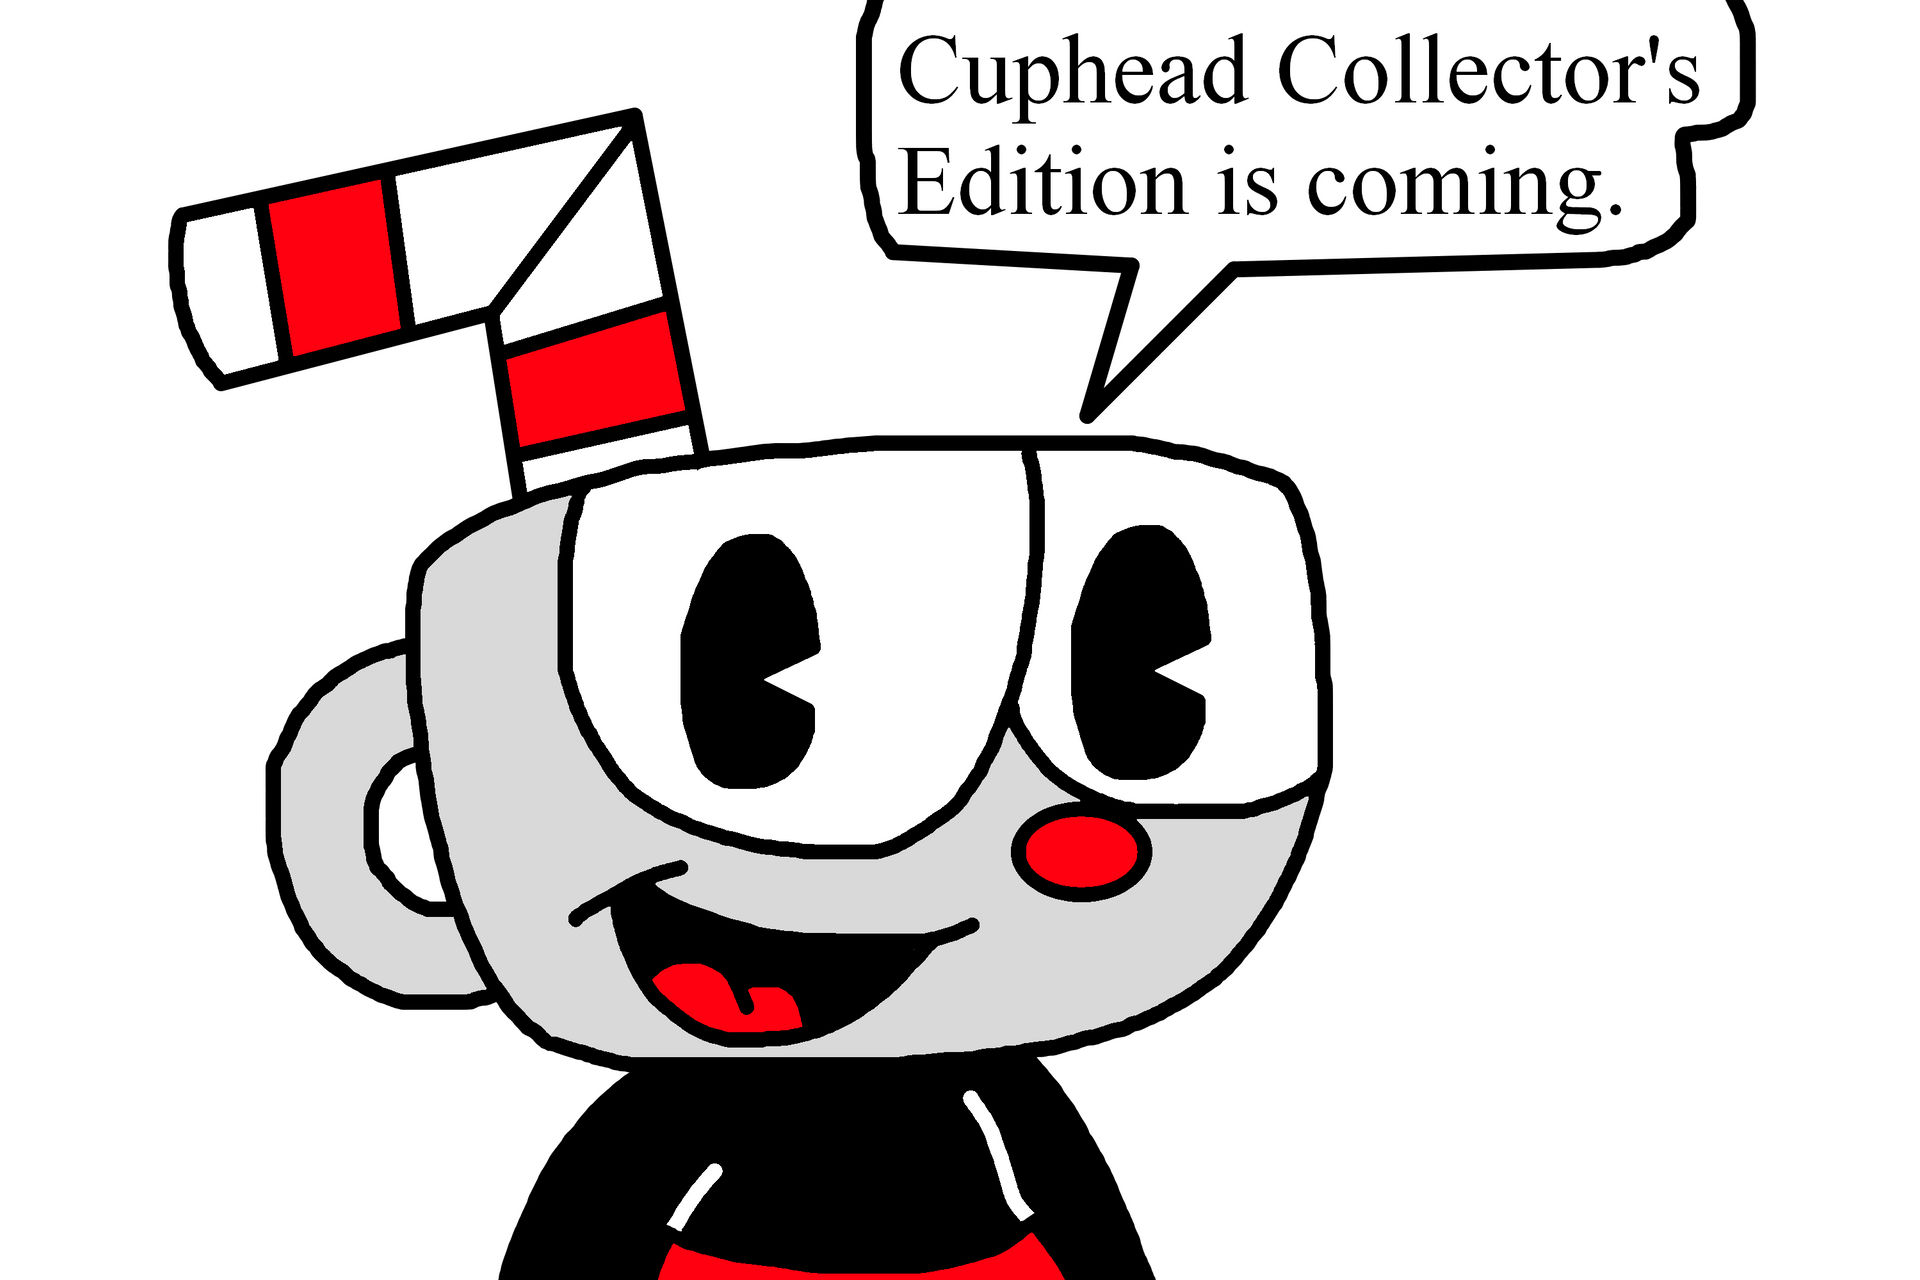 The Cuphead Show got new trailer by Ultra-Shounen-Kai-Z on DeviantArt